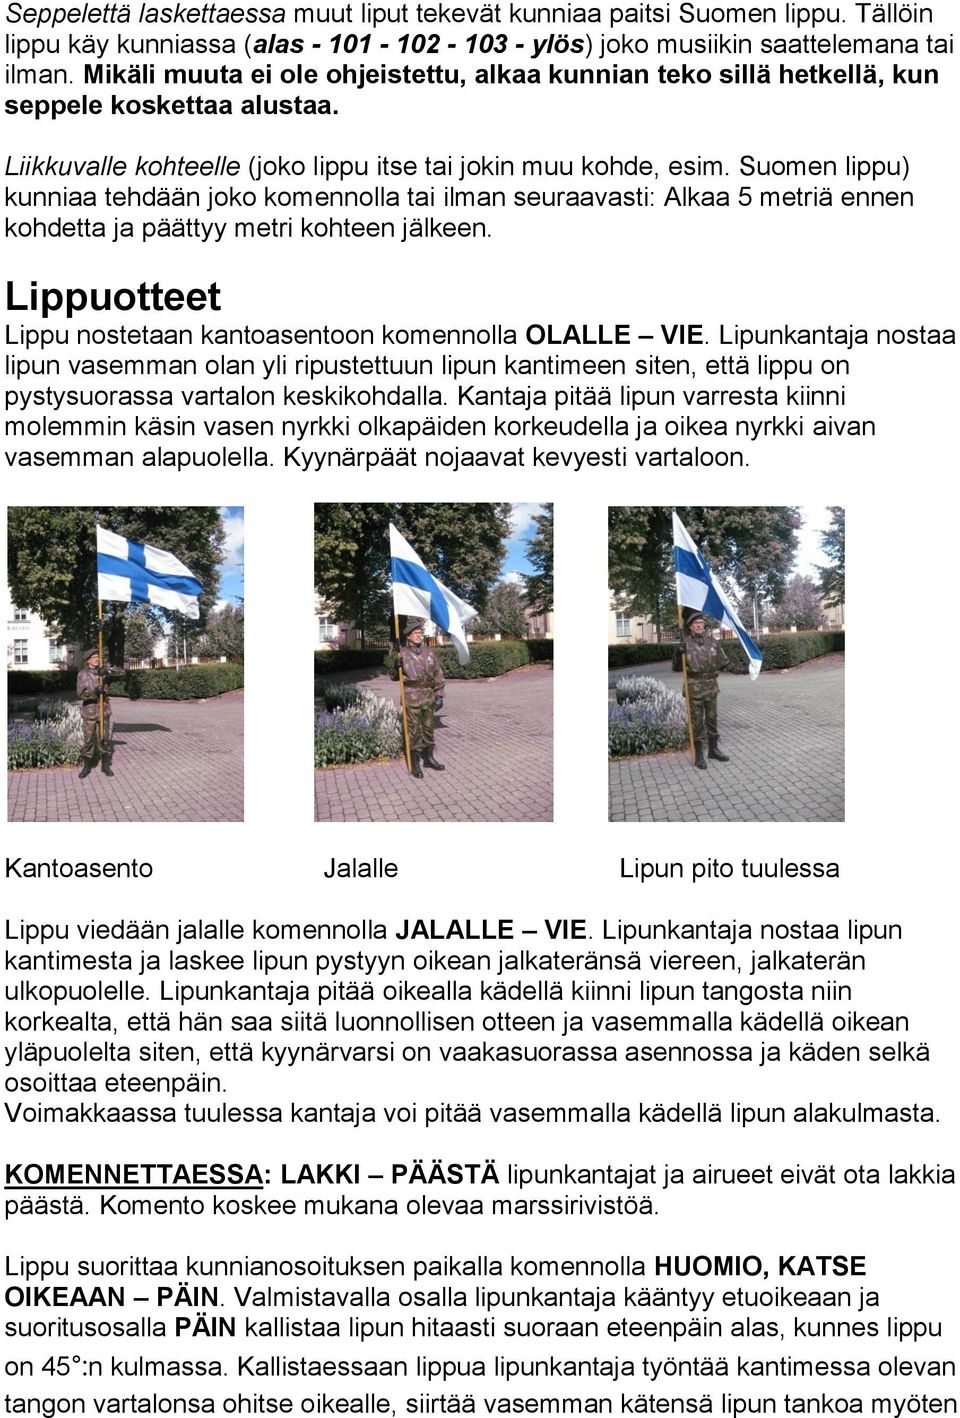 Suomen lippu) kunniaa tehdään joko komennolla tai ilman seuraavasti: Alkaa 5 metriä ennen kohdetta ja päättyy metri kohteen jälkeen. Lippuotteet Lippu nostetaan kantoasentoon komennolla OLALLE VIE.